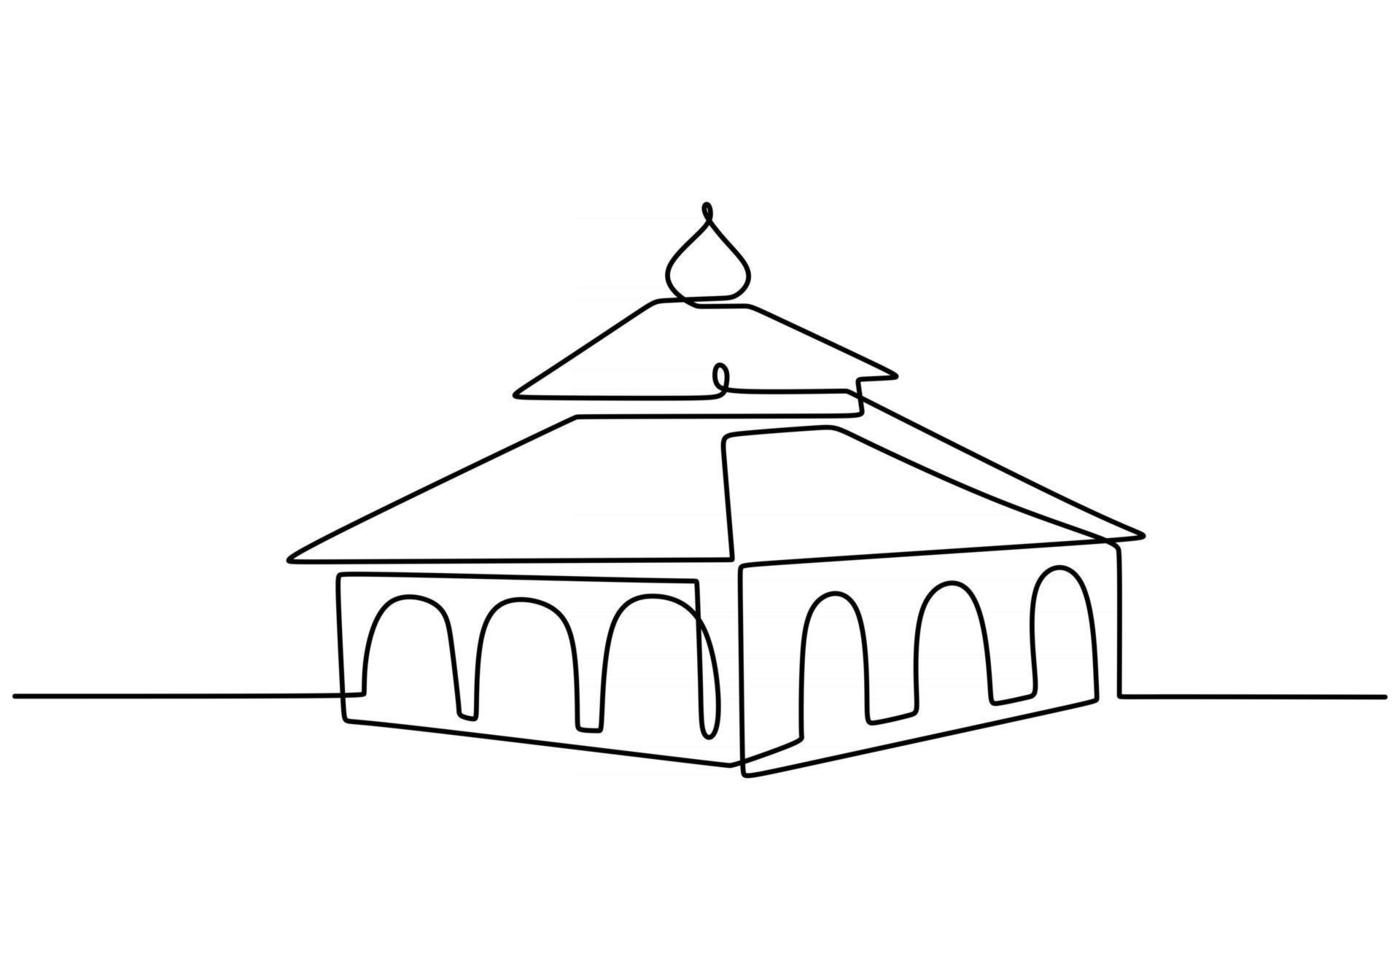 moskén kontinuerlig en linje ritning vektor minimalistisk design. islamiska symbol tecken isolerade en vit bakgrund.